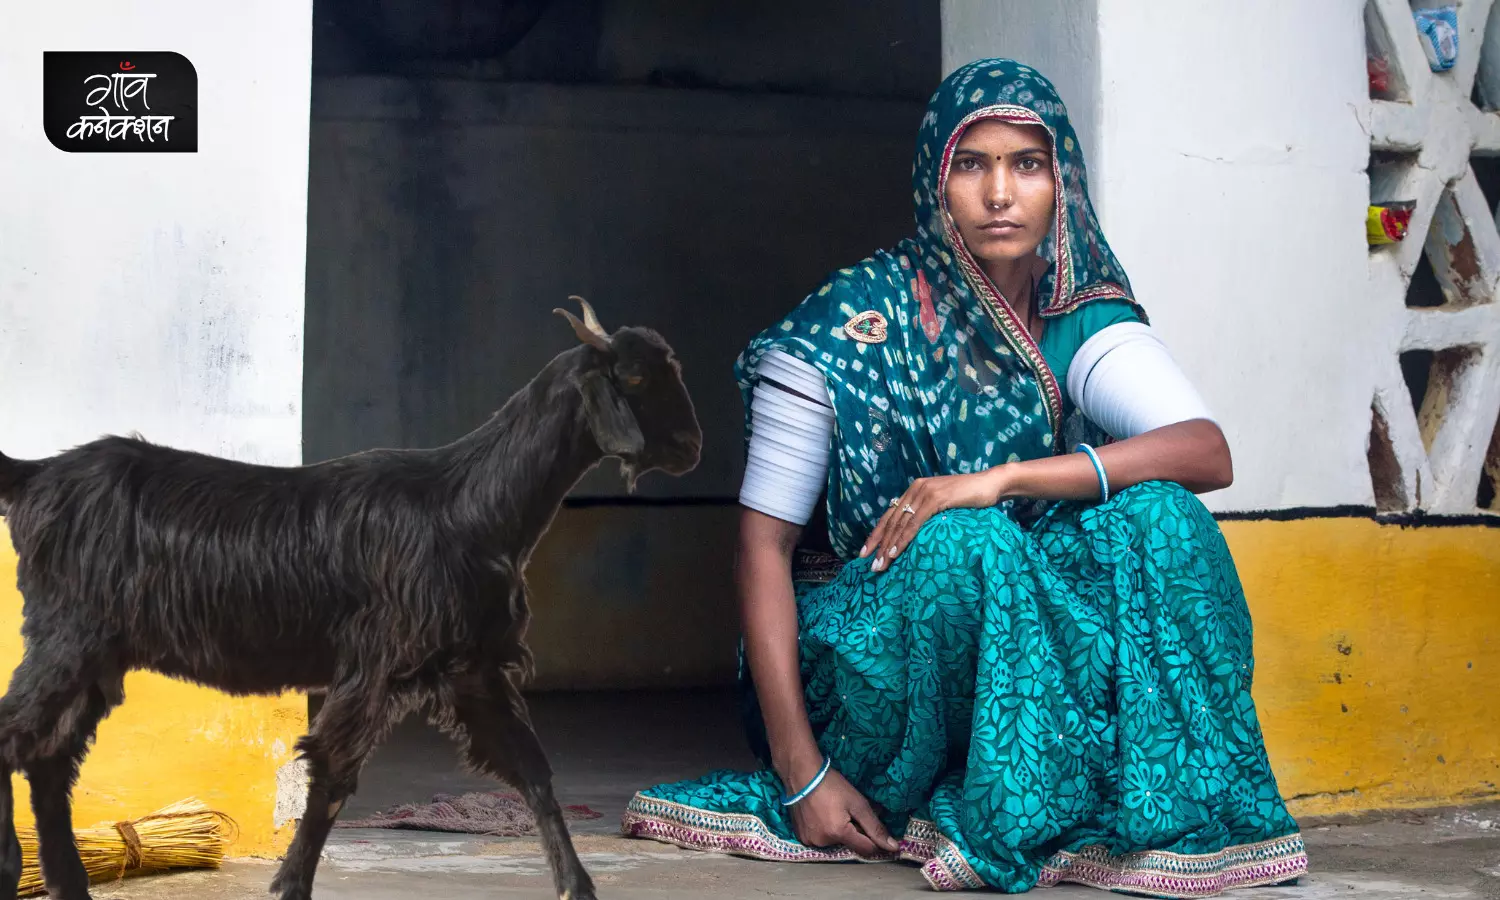 पशुओं को खरीदने-बेचने से लेकर, जरूरी सलाह तक; घर बैठे इन महिला किसानों को मिल रहा कई सारी समस्याओं का समाधान